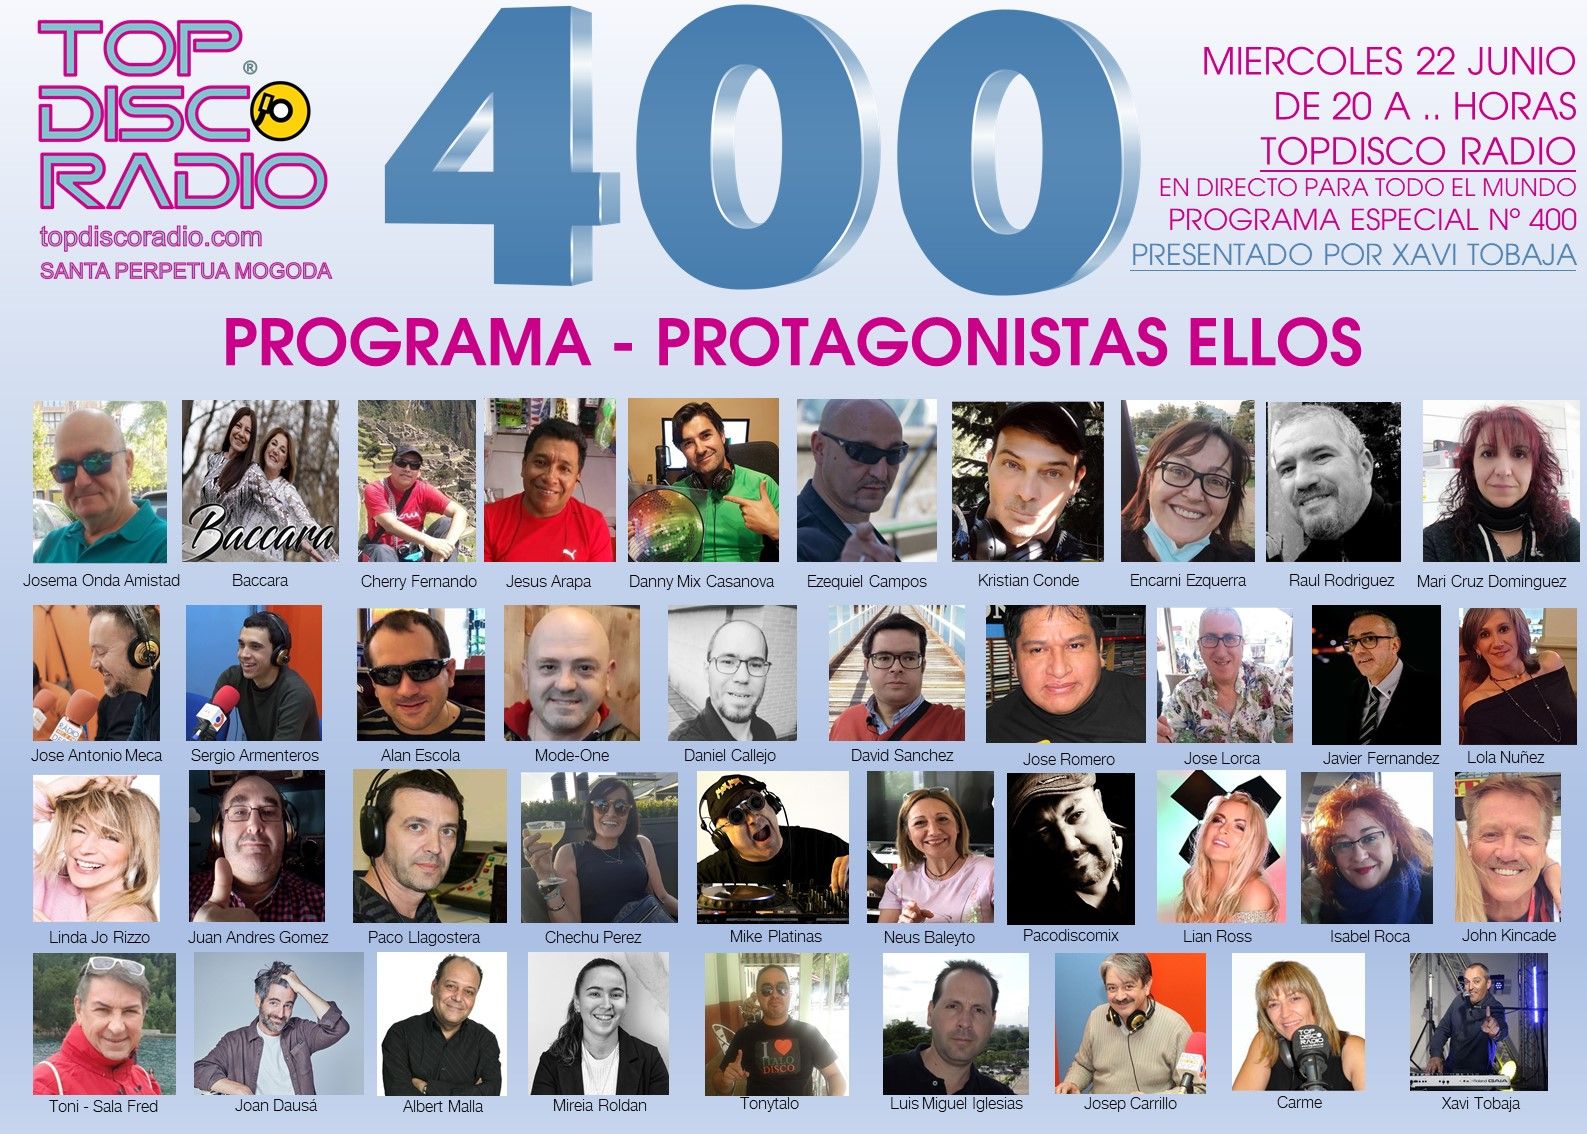 400 PROGRAMA ESPECIAL LA AUDIENCIA PROTAGONISTA